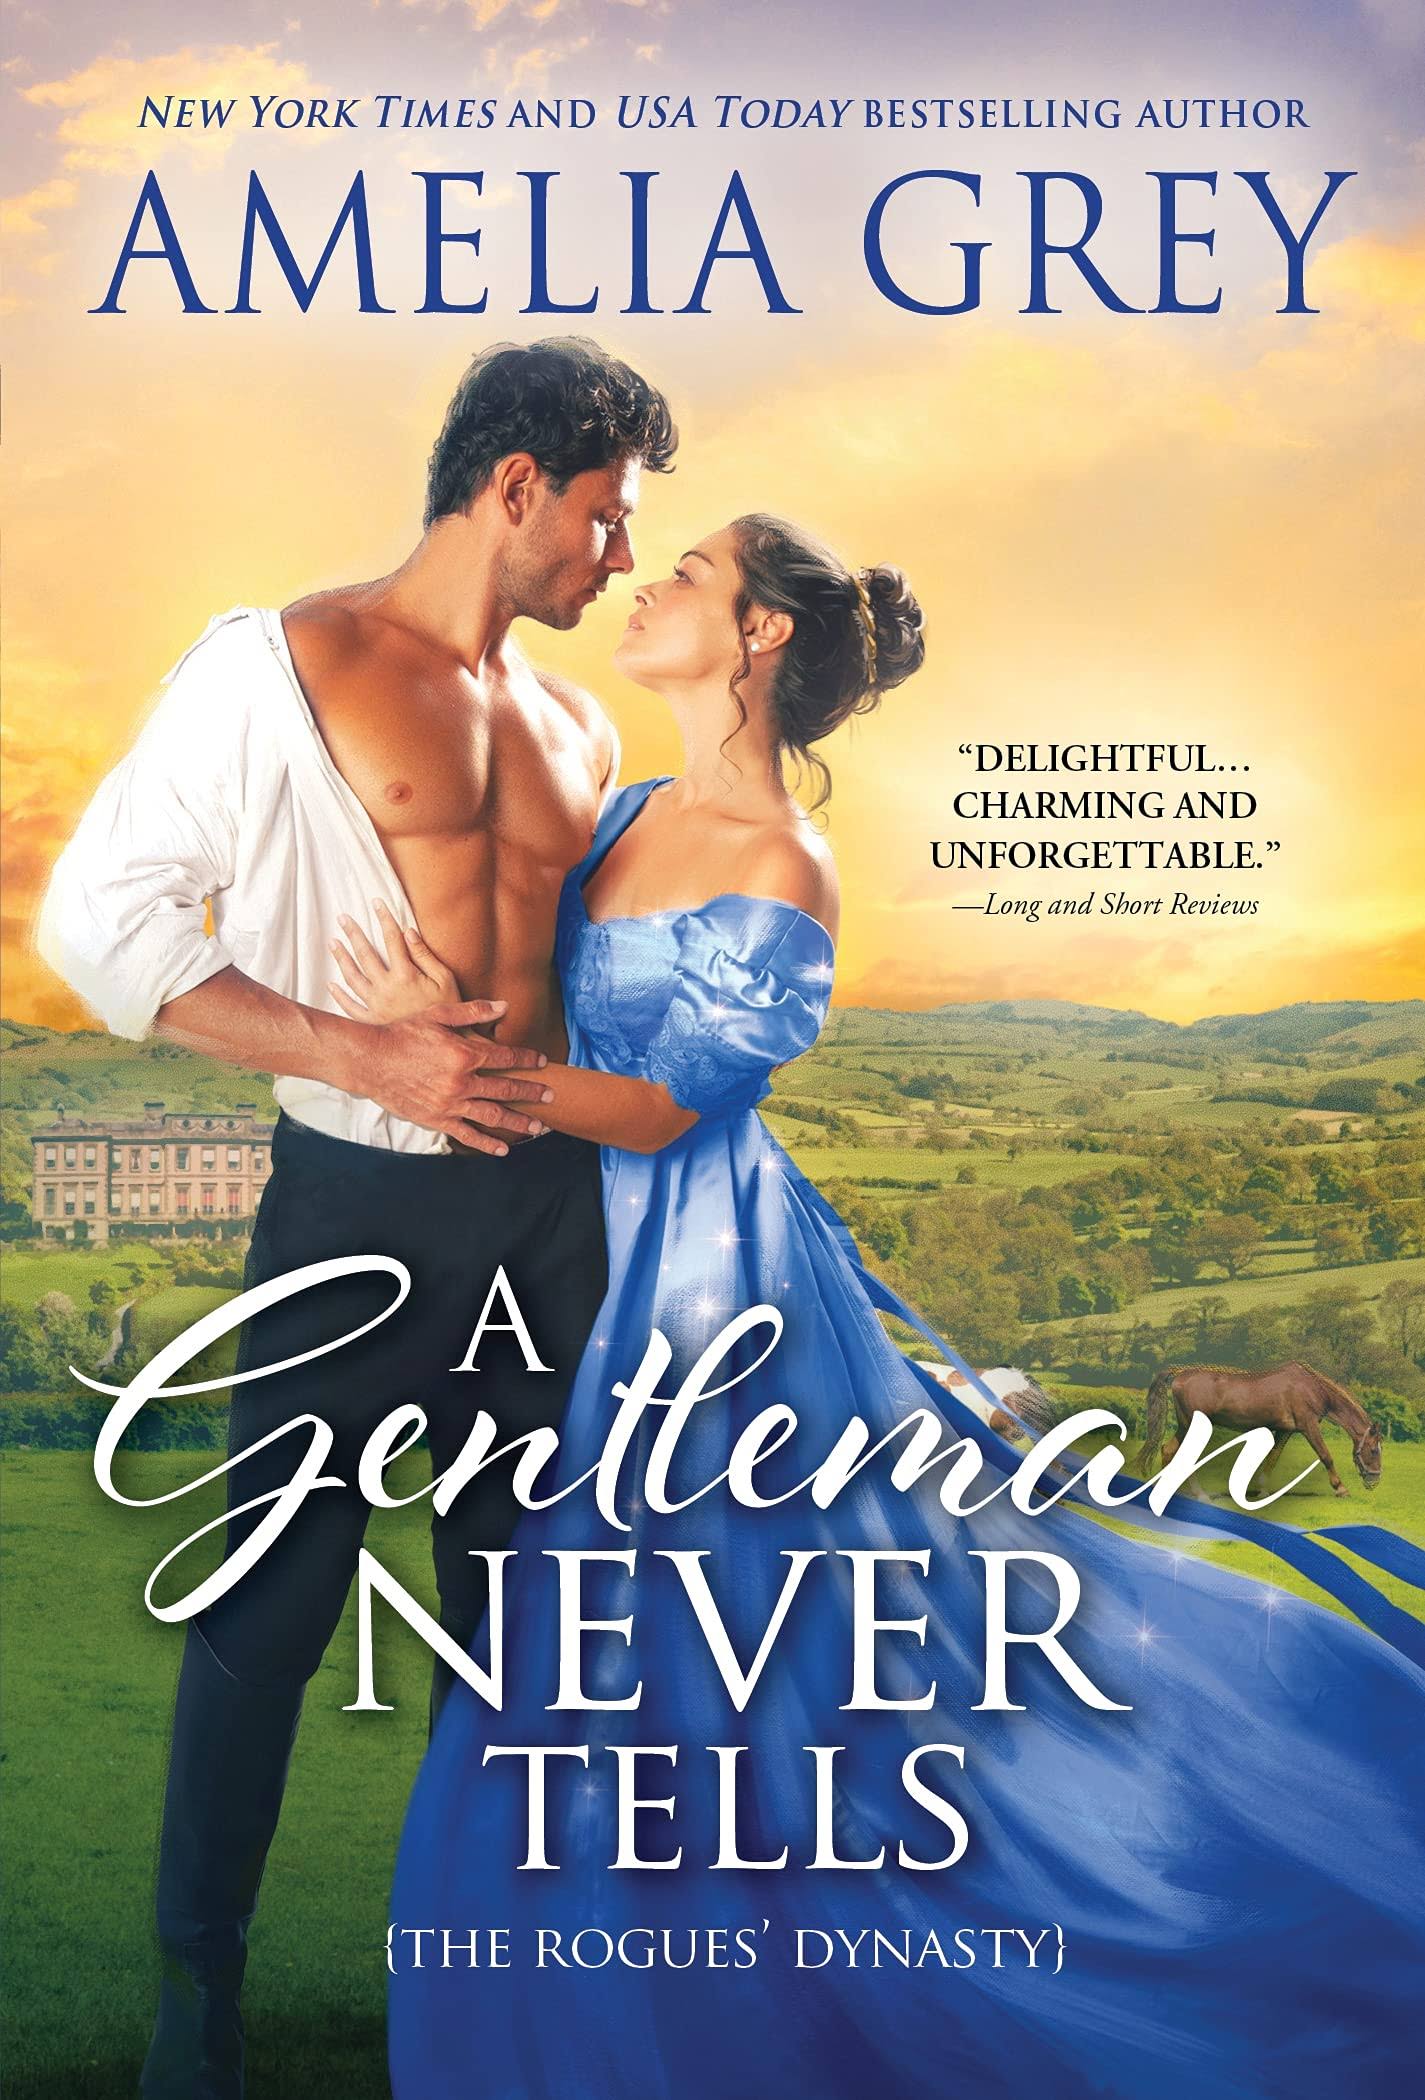 A Gentleman Never Tells [Book]